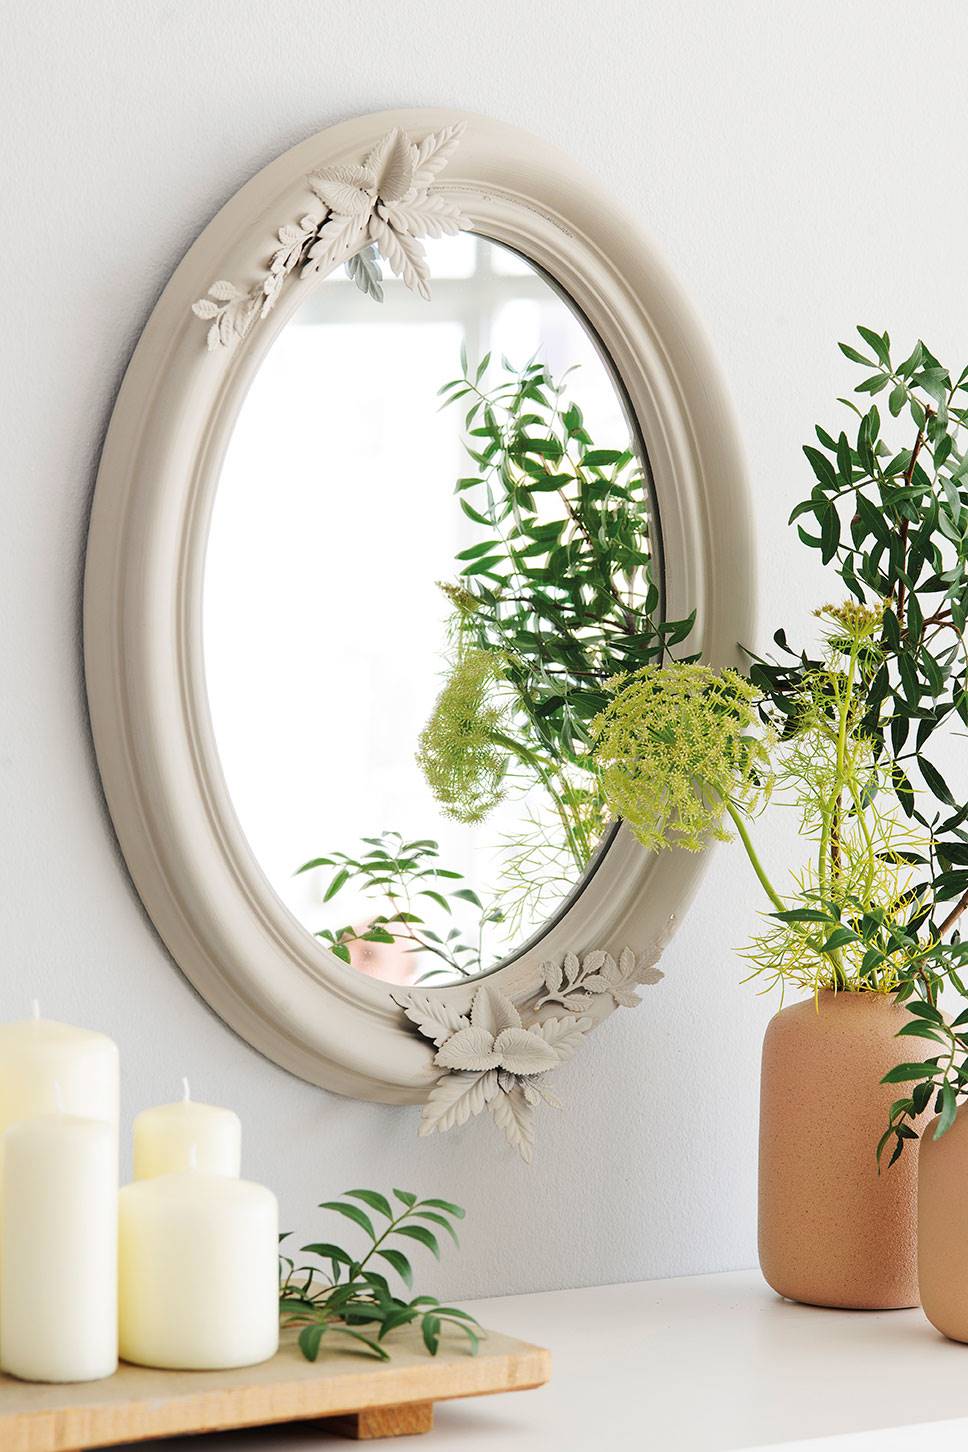 Detalle decorativo con velas, jarrones y un espejo de estilo romántico con marco blanco 00462283